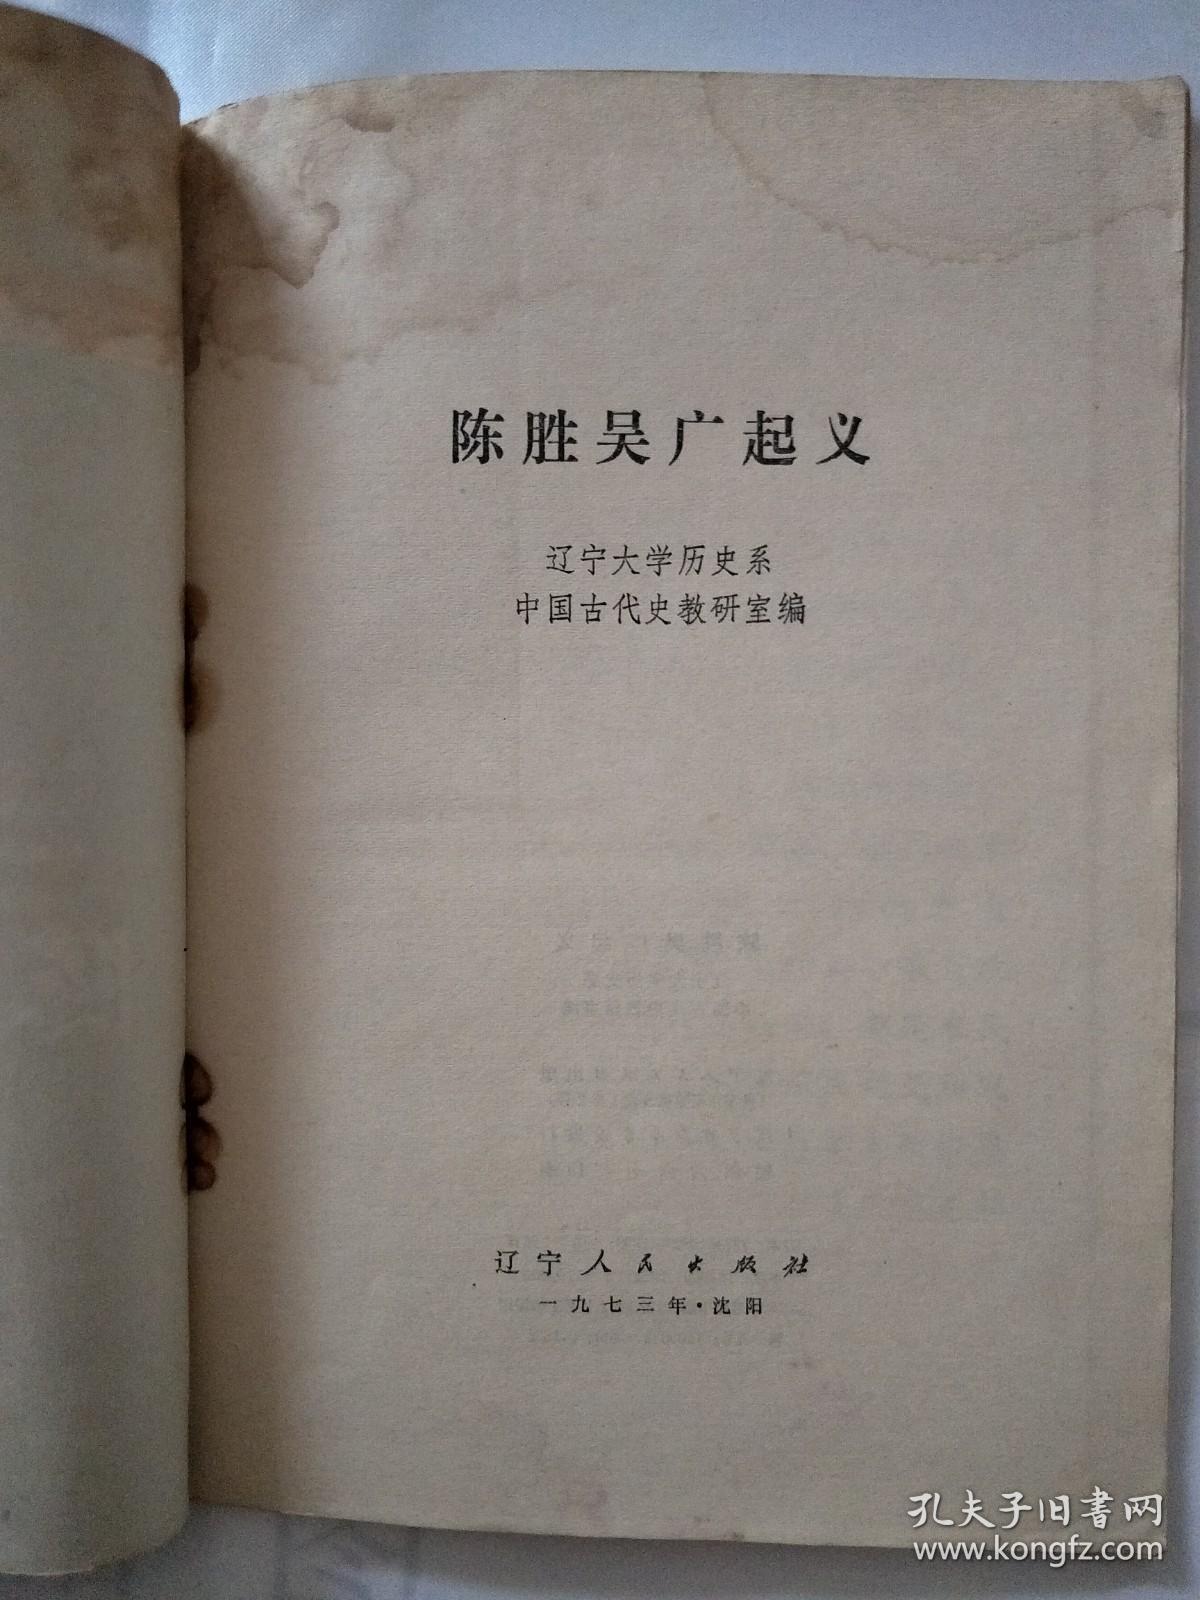 陈胜吴广起义 一版一印 页前有毛主席语录 内有插图